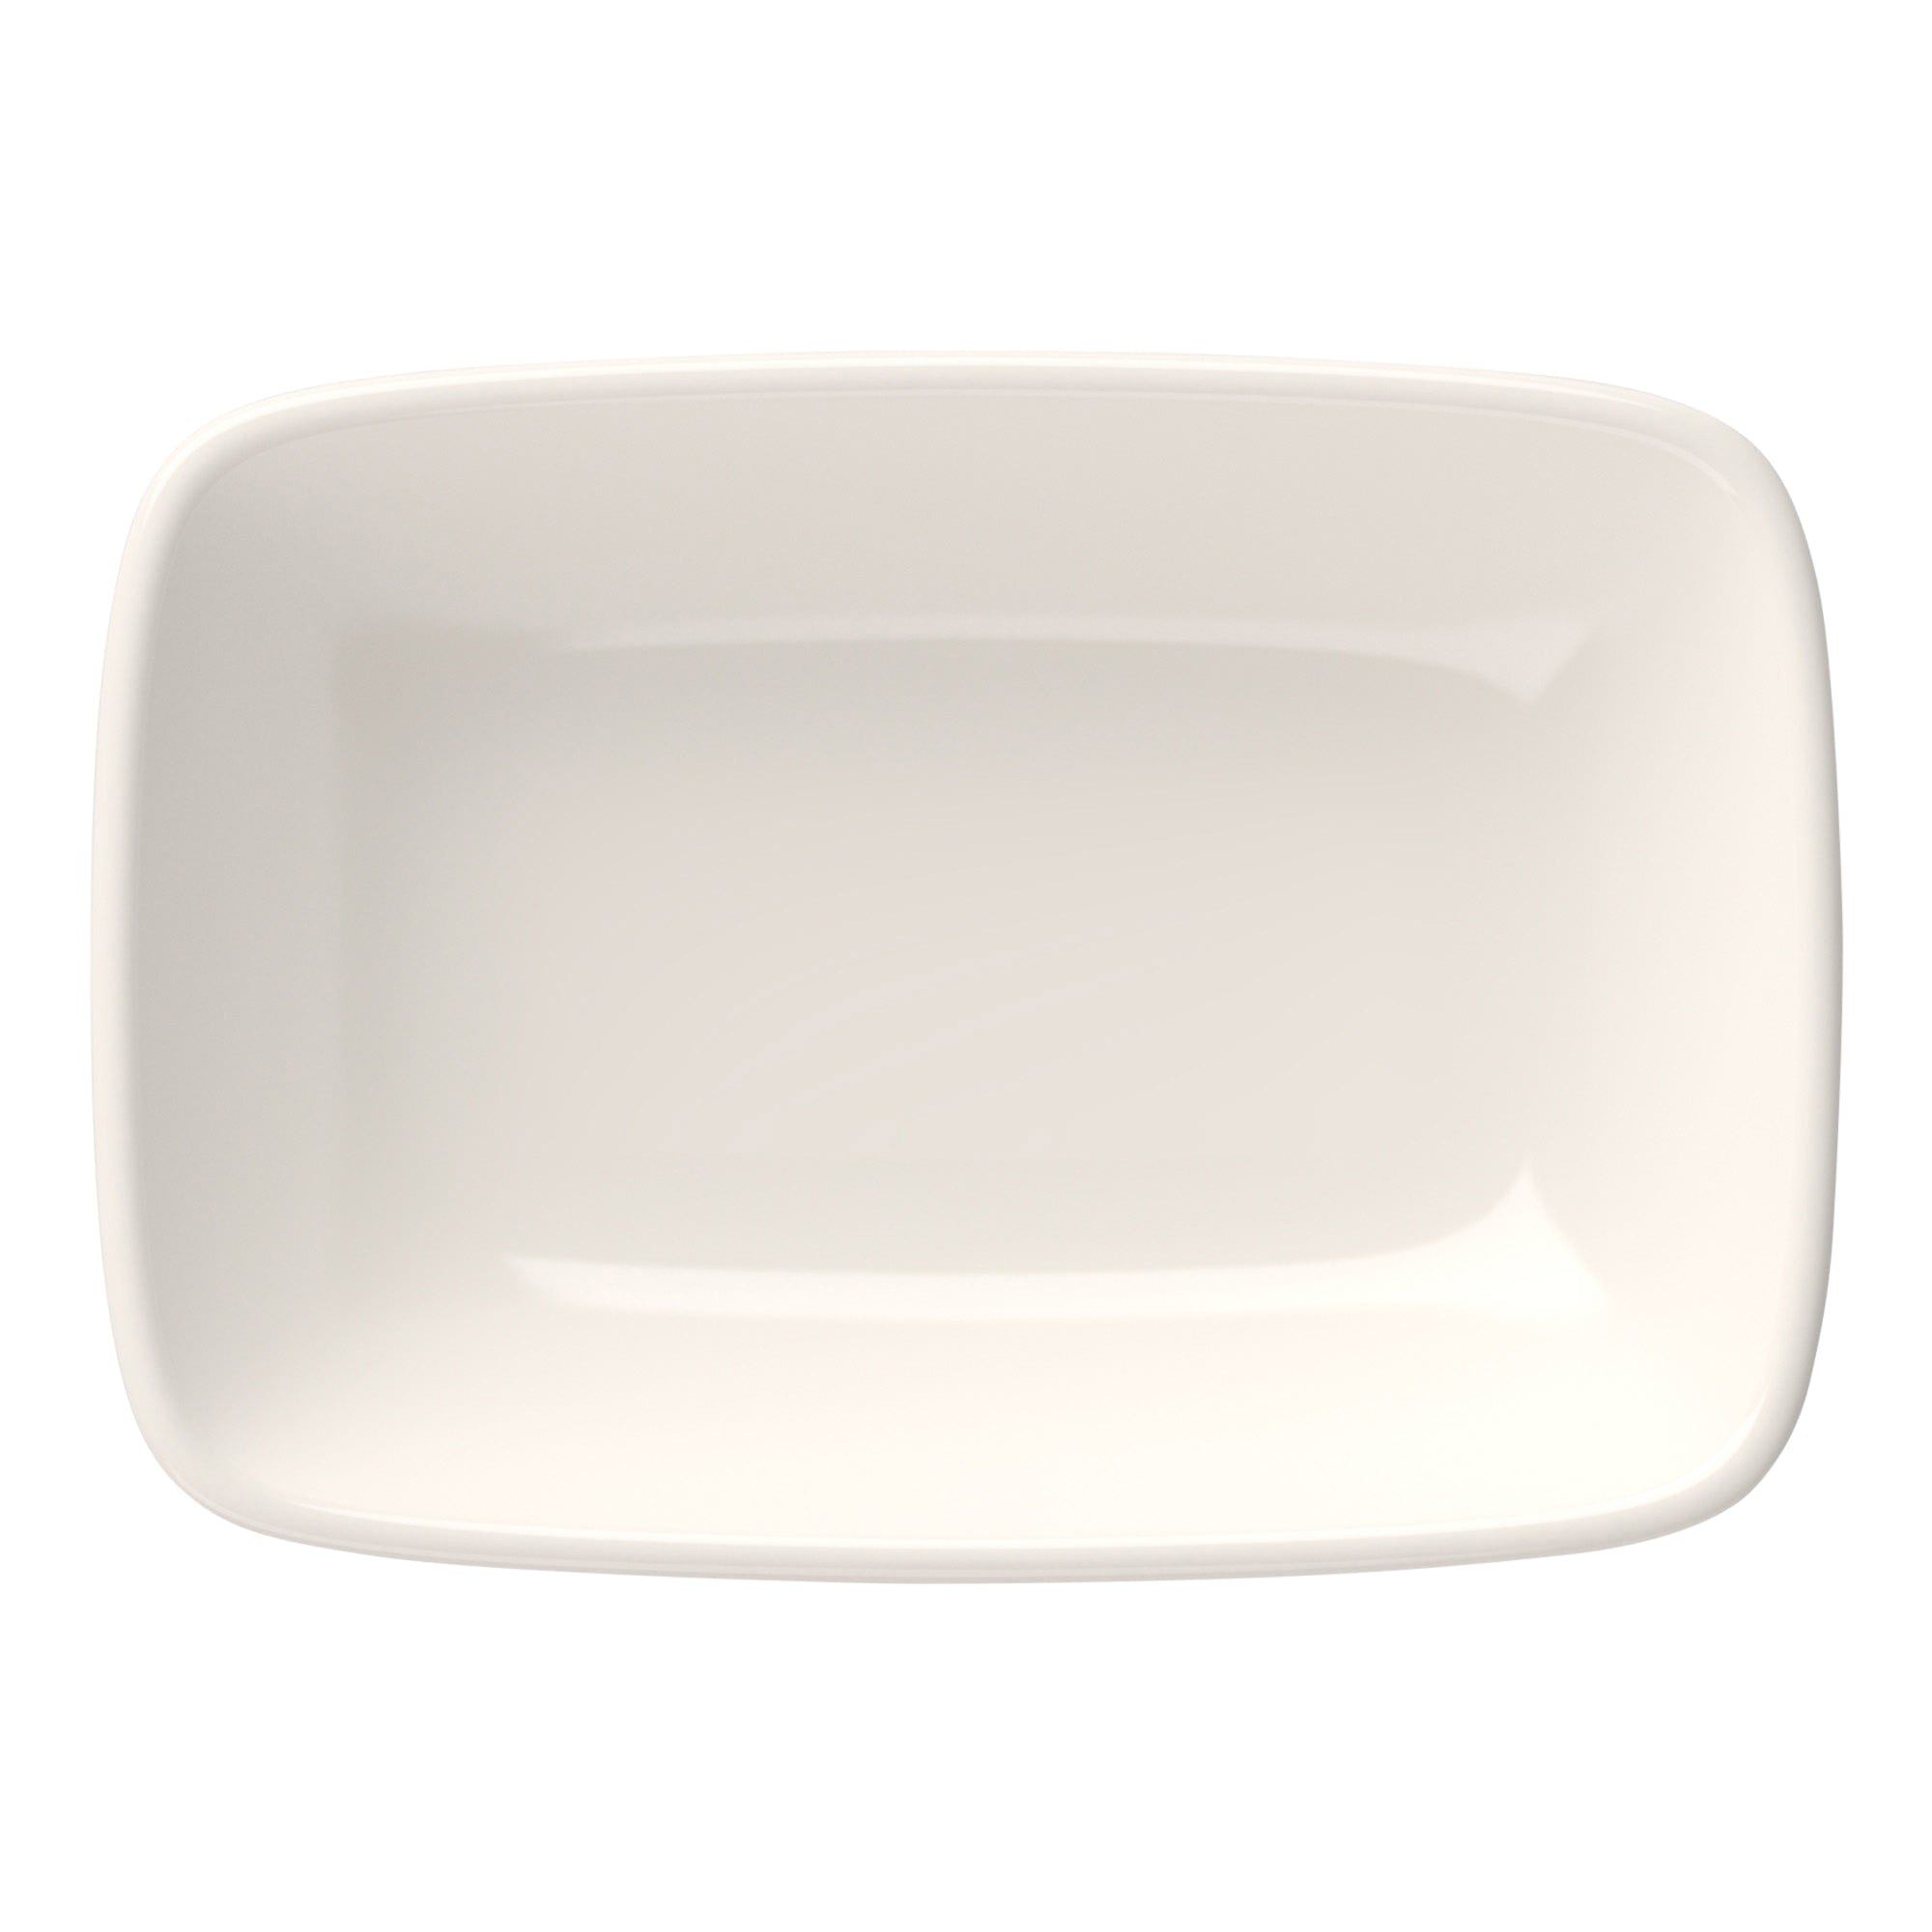 Quadro Porcelain Rectangular Platter 4.9"x3.3"